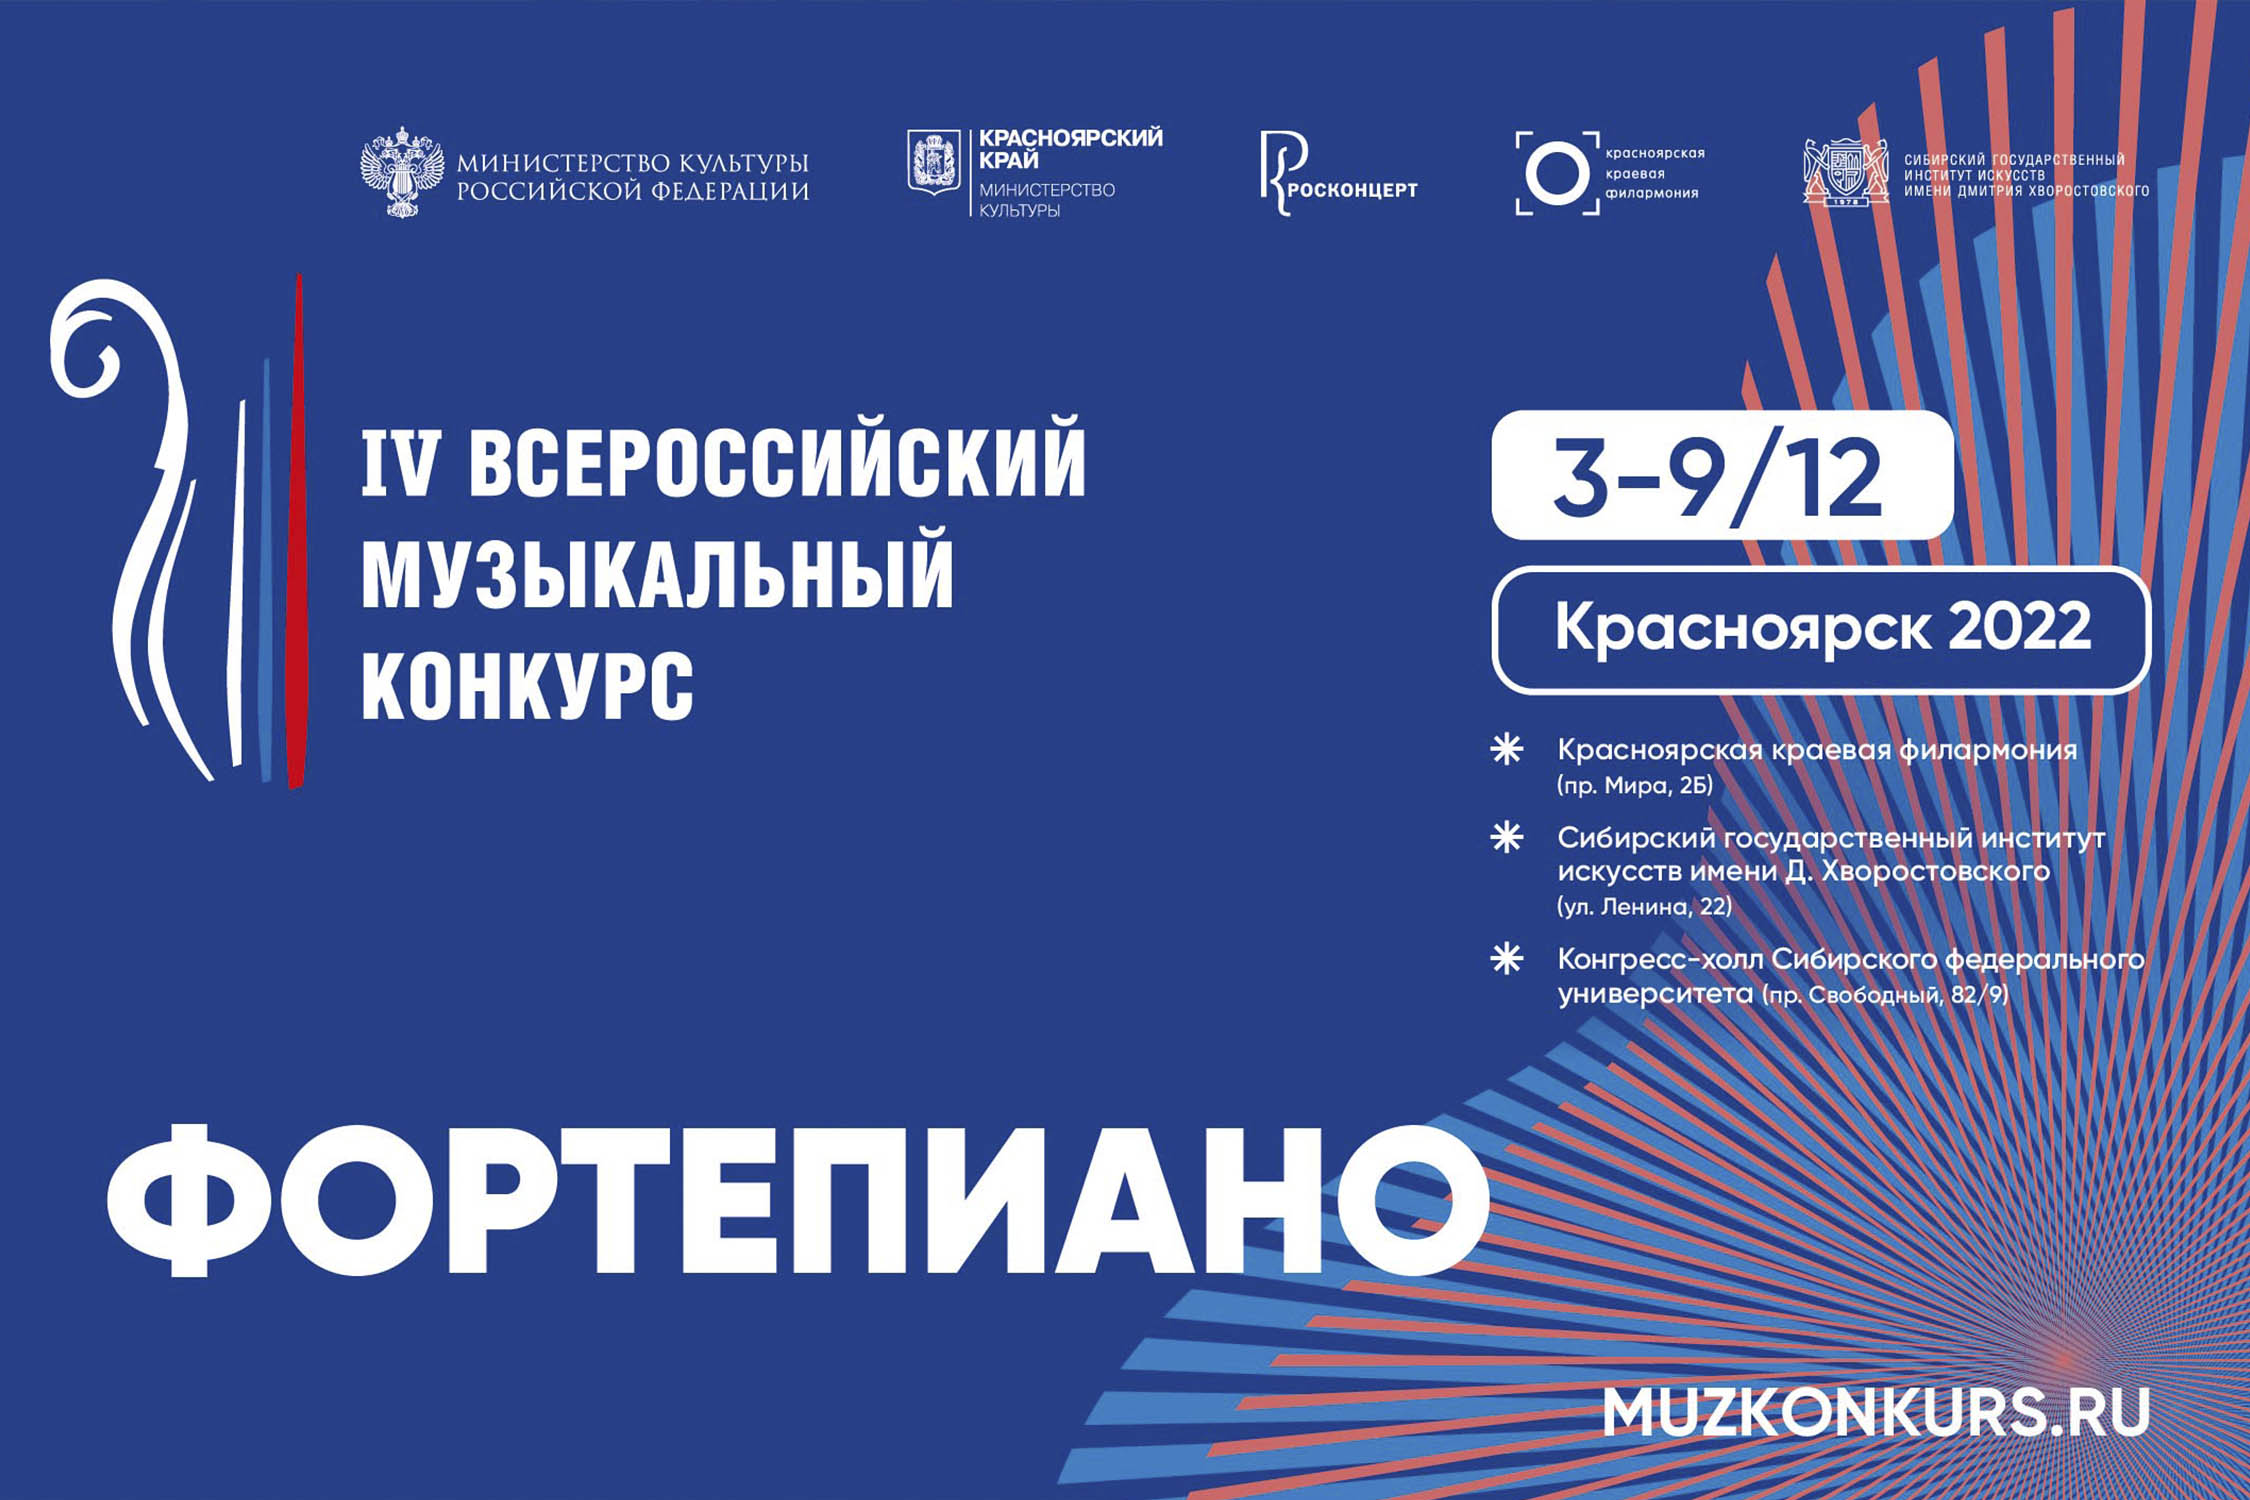 Опубликована программа IV Всероссийского музыкального конкурса в номинации «Фортепиано»